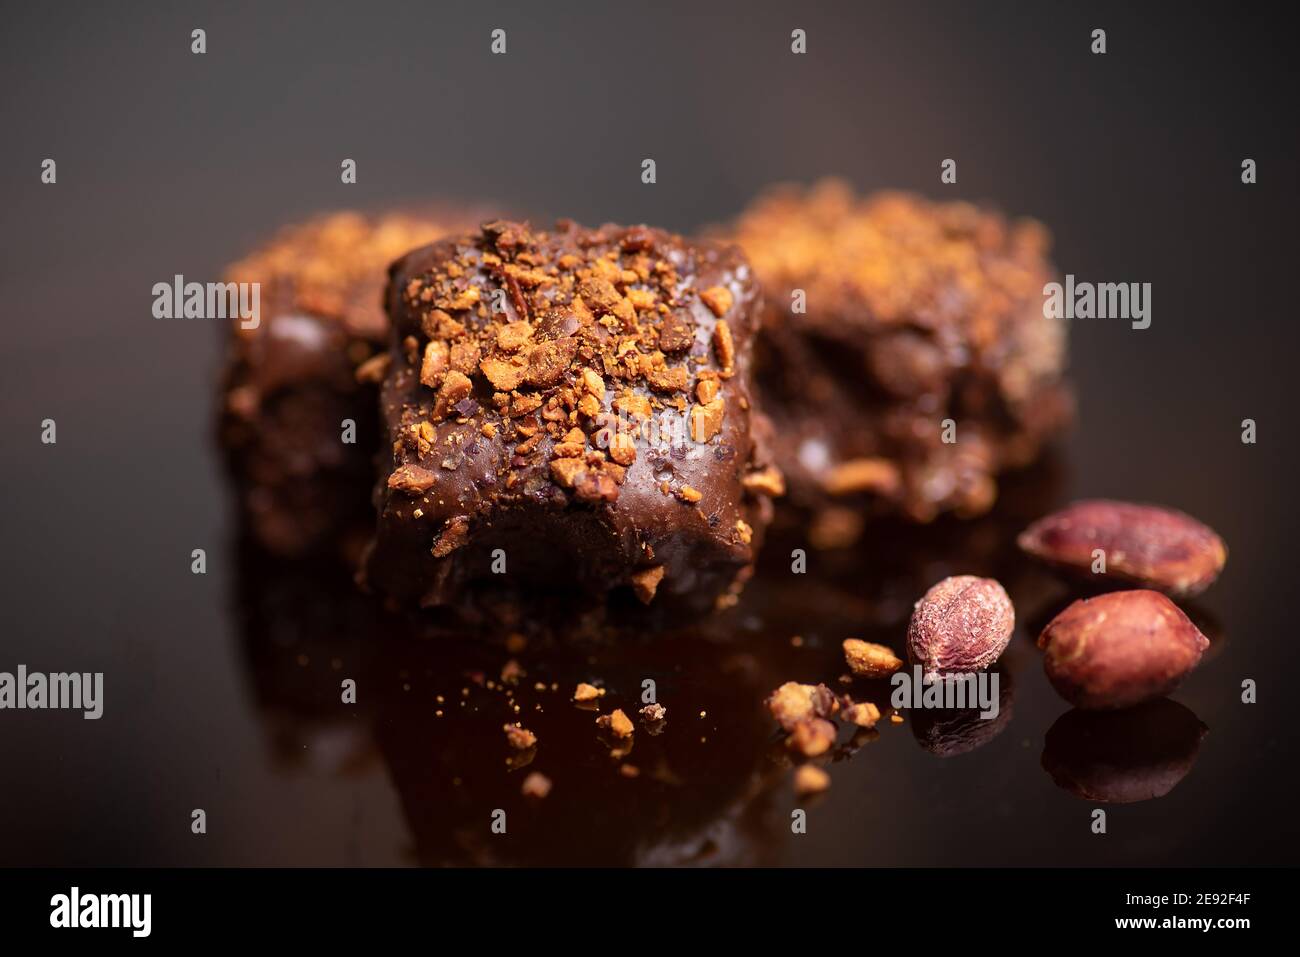 Dessert fatto in casa con torta al cioccolato con mandorle su sfondo scuro Foto Stock